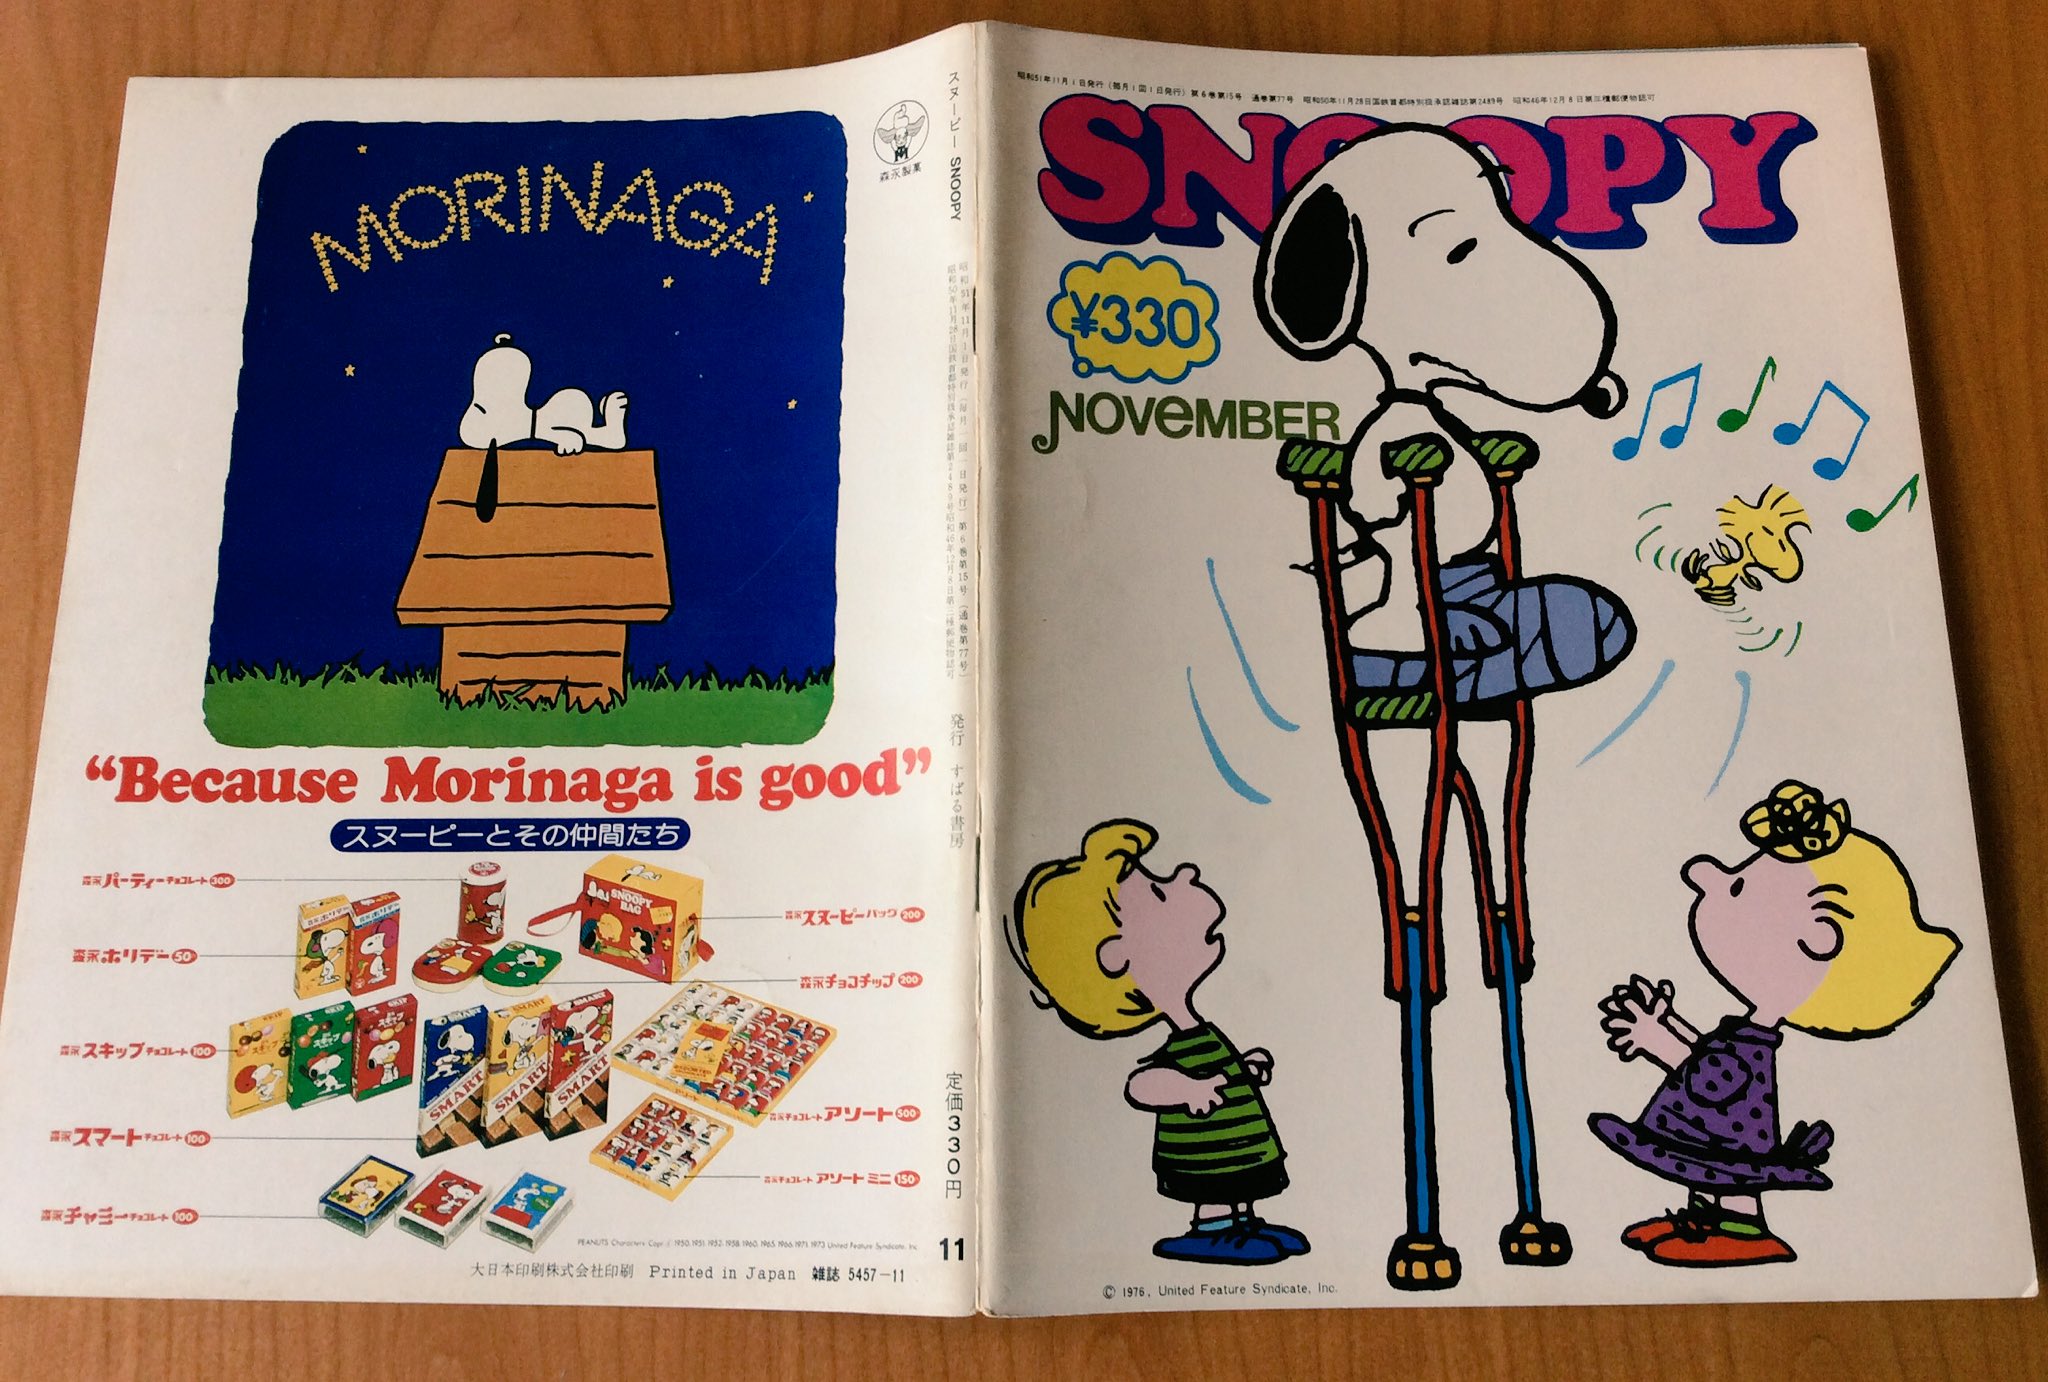 雑貨奥様 昭和51年11月号 Snoopy 貴重な漫画にゲームに いちご新聞の紹介もあります そしてスヌーピー好き芸能人として 南沙織さんのインタビューも掲載されています スヌーピー 昭和レトロ 南沙織 T Co Faynoexlki Twitter